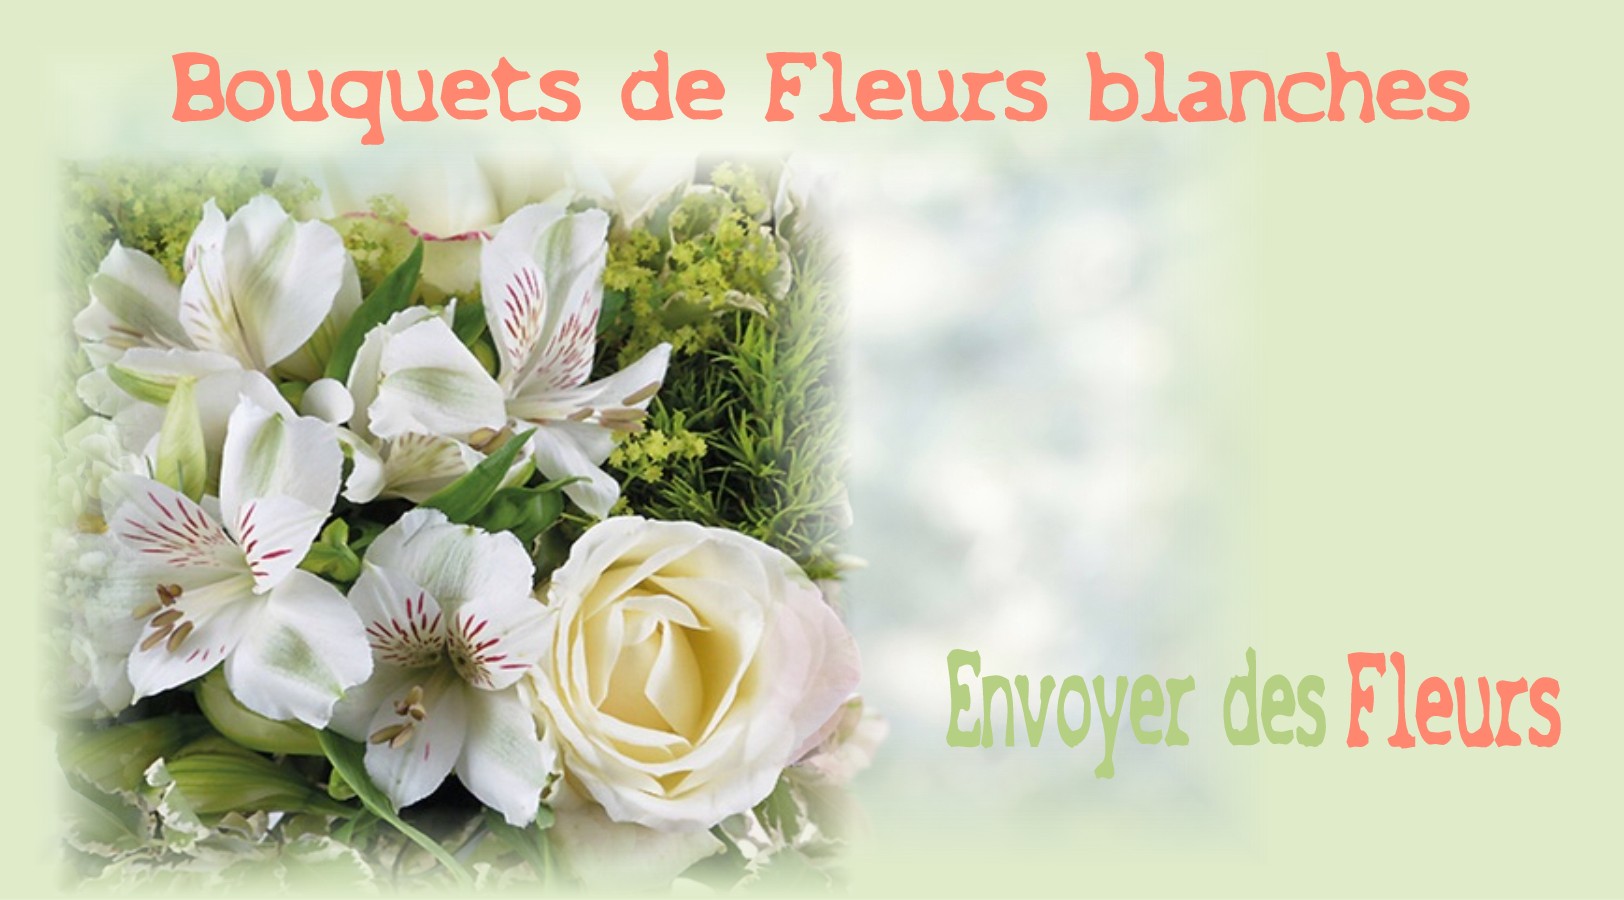 BOUQUETS DE FLEURS BLANCHES -FLEURISTE de l'AUBE - ENVOYER DES FLEURS